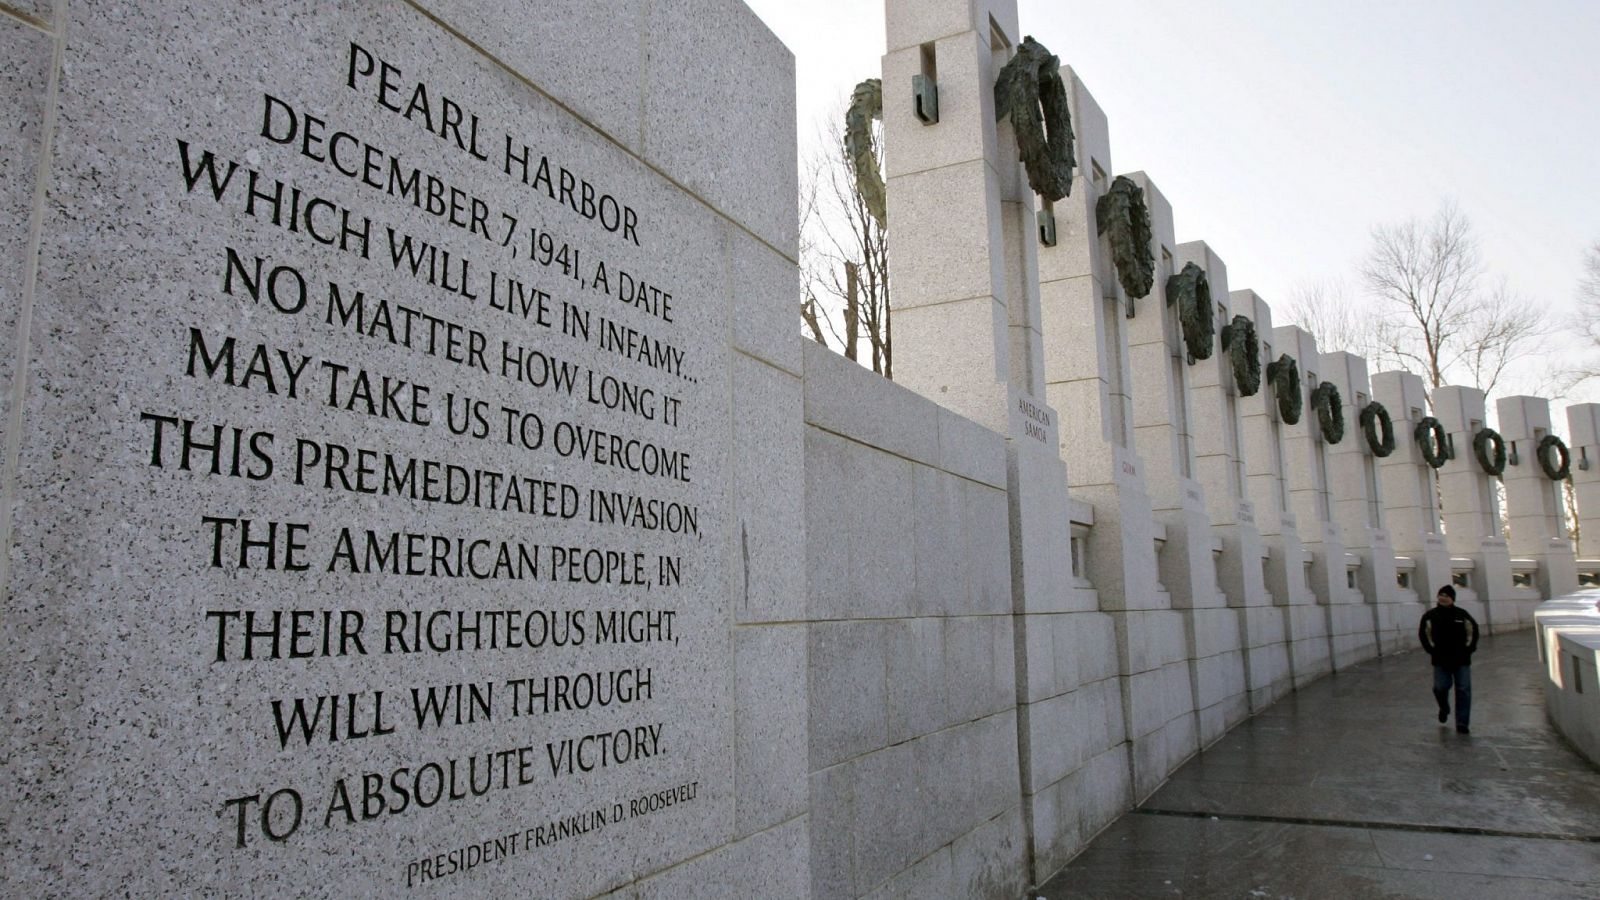 80 aniversario de Pearl Harbor, el ataque que desencadenó la entrada de EE.UU. en la II G.M.